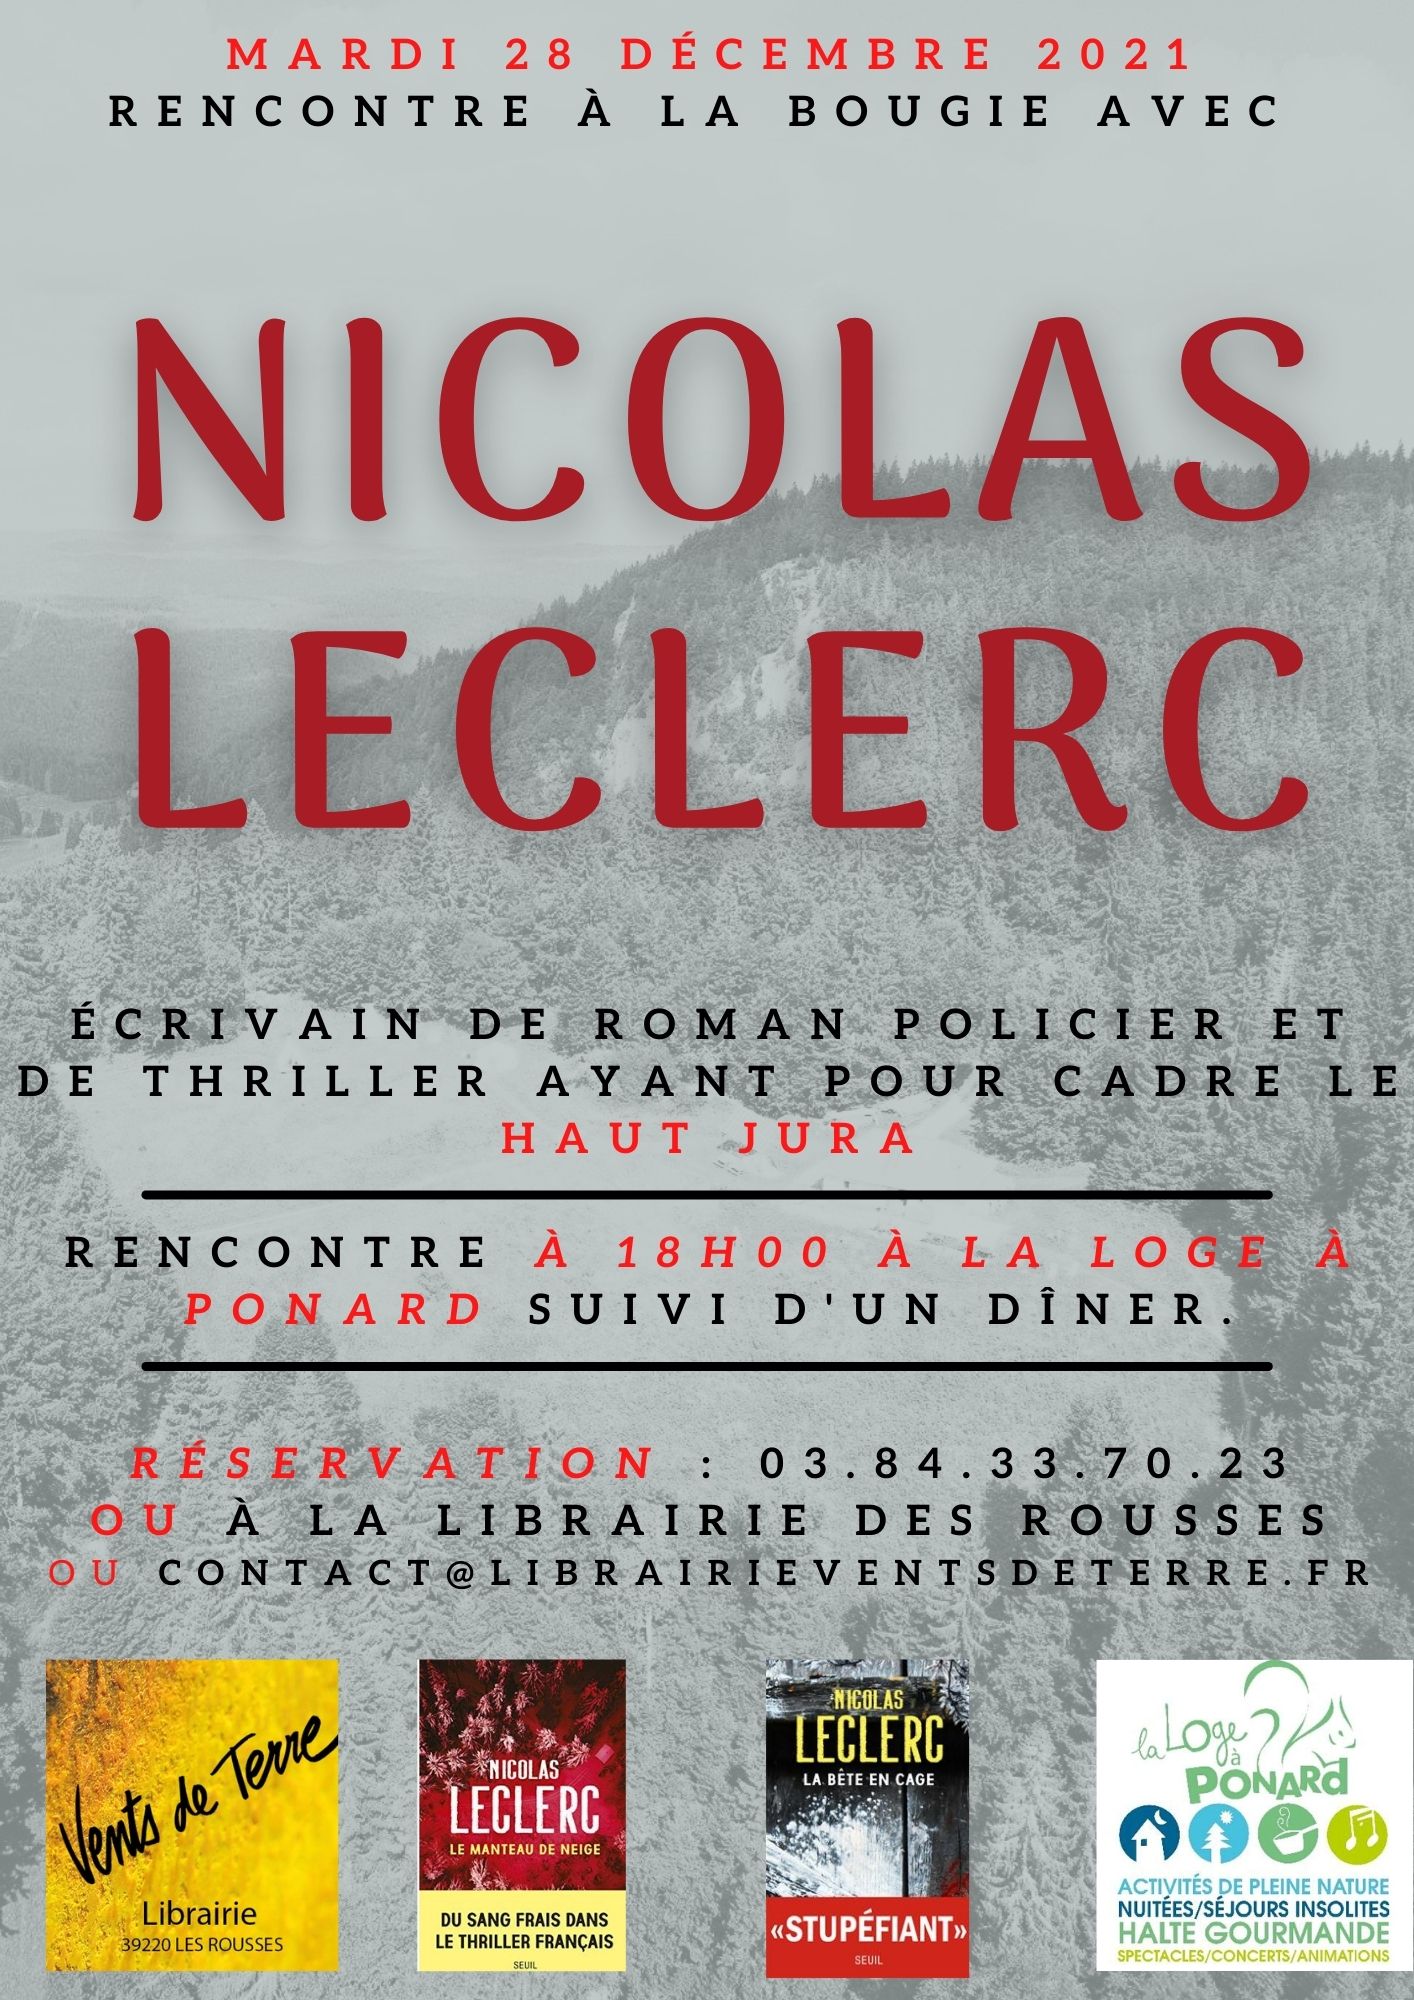 Nicolas leclerc